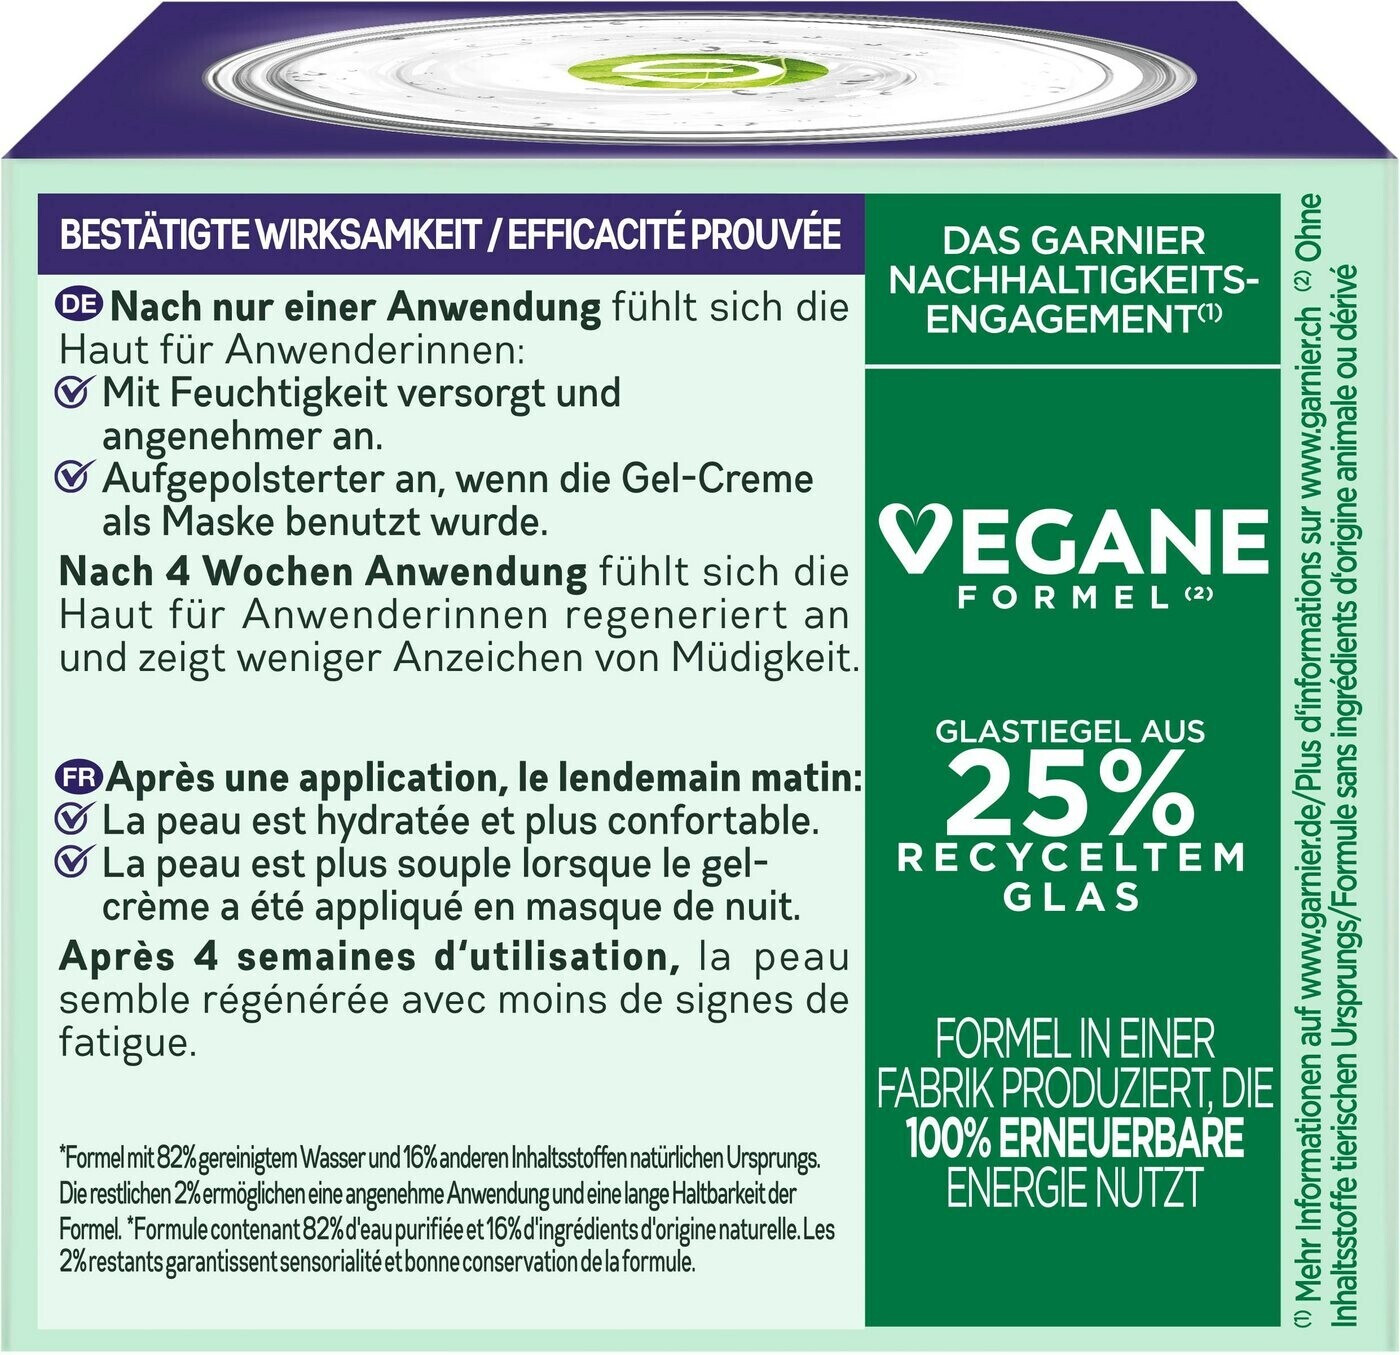 Garnier Skin Active Hyaluron Aloe Hydra Nachtcreme € Booster | Preisvergleich ab 5,95 (50ml) bei